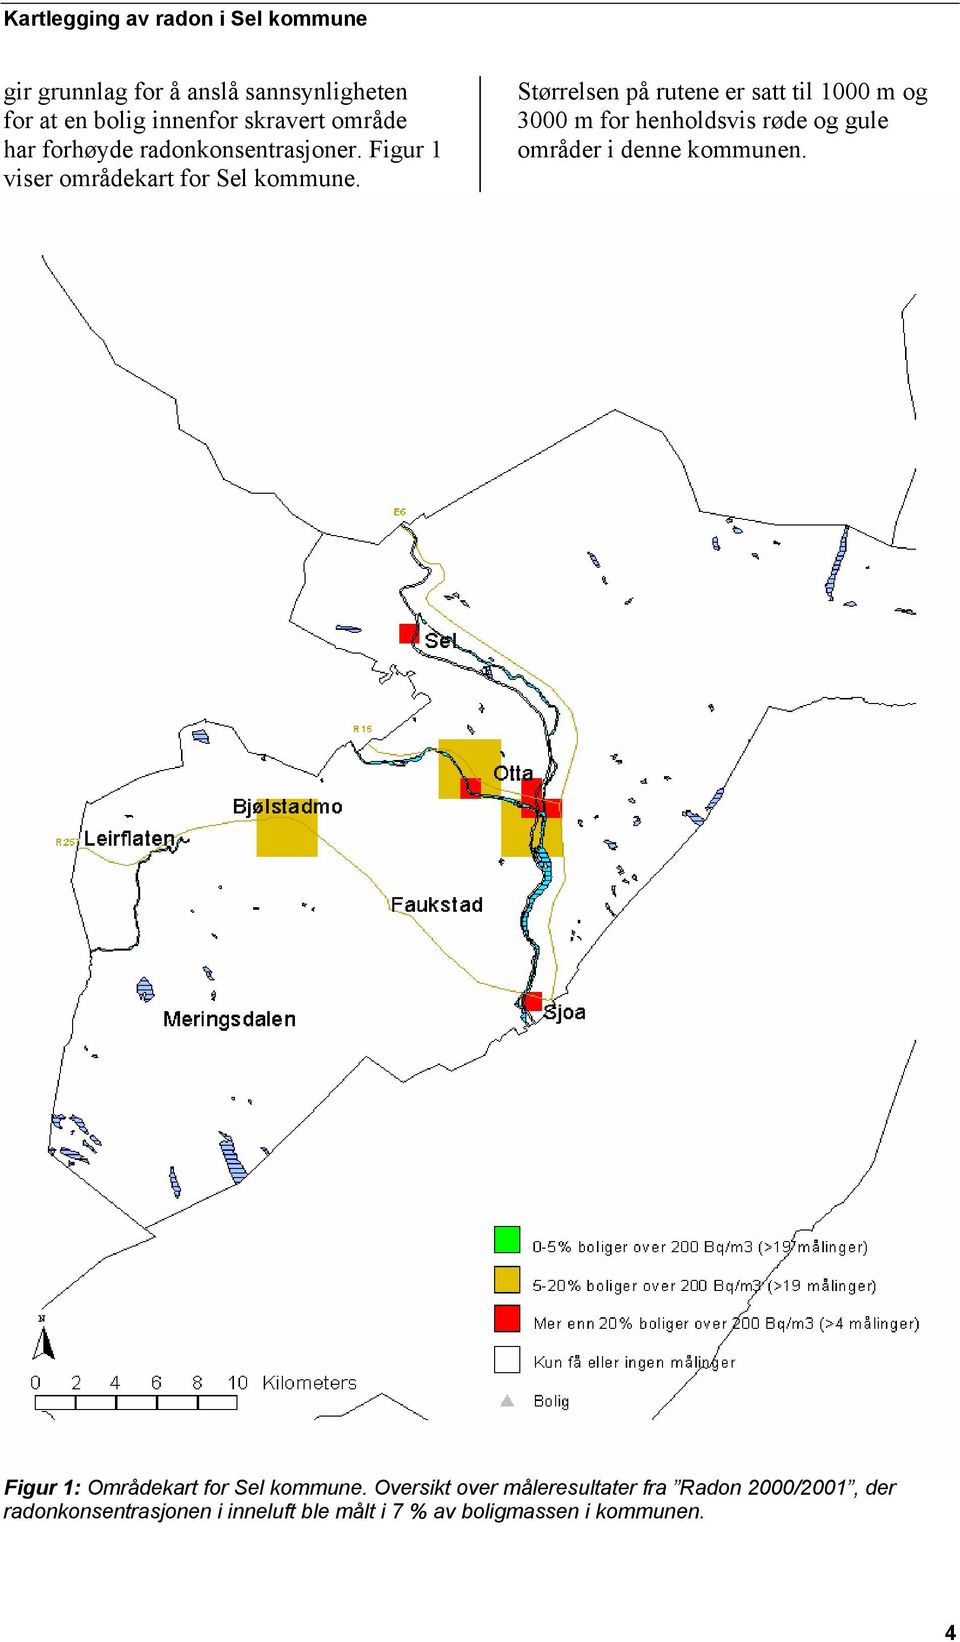 Størrelsen på rutene er satt til 1000 m og 3000 m for henholdsvis røde og gule områder i denne kommunen.